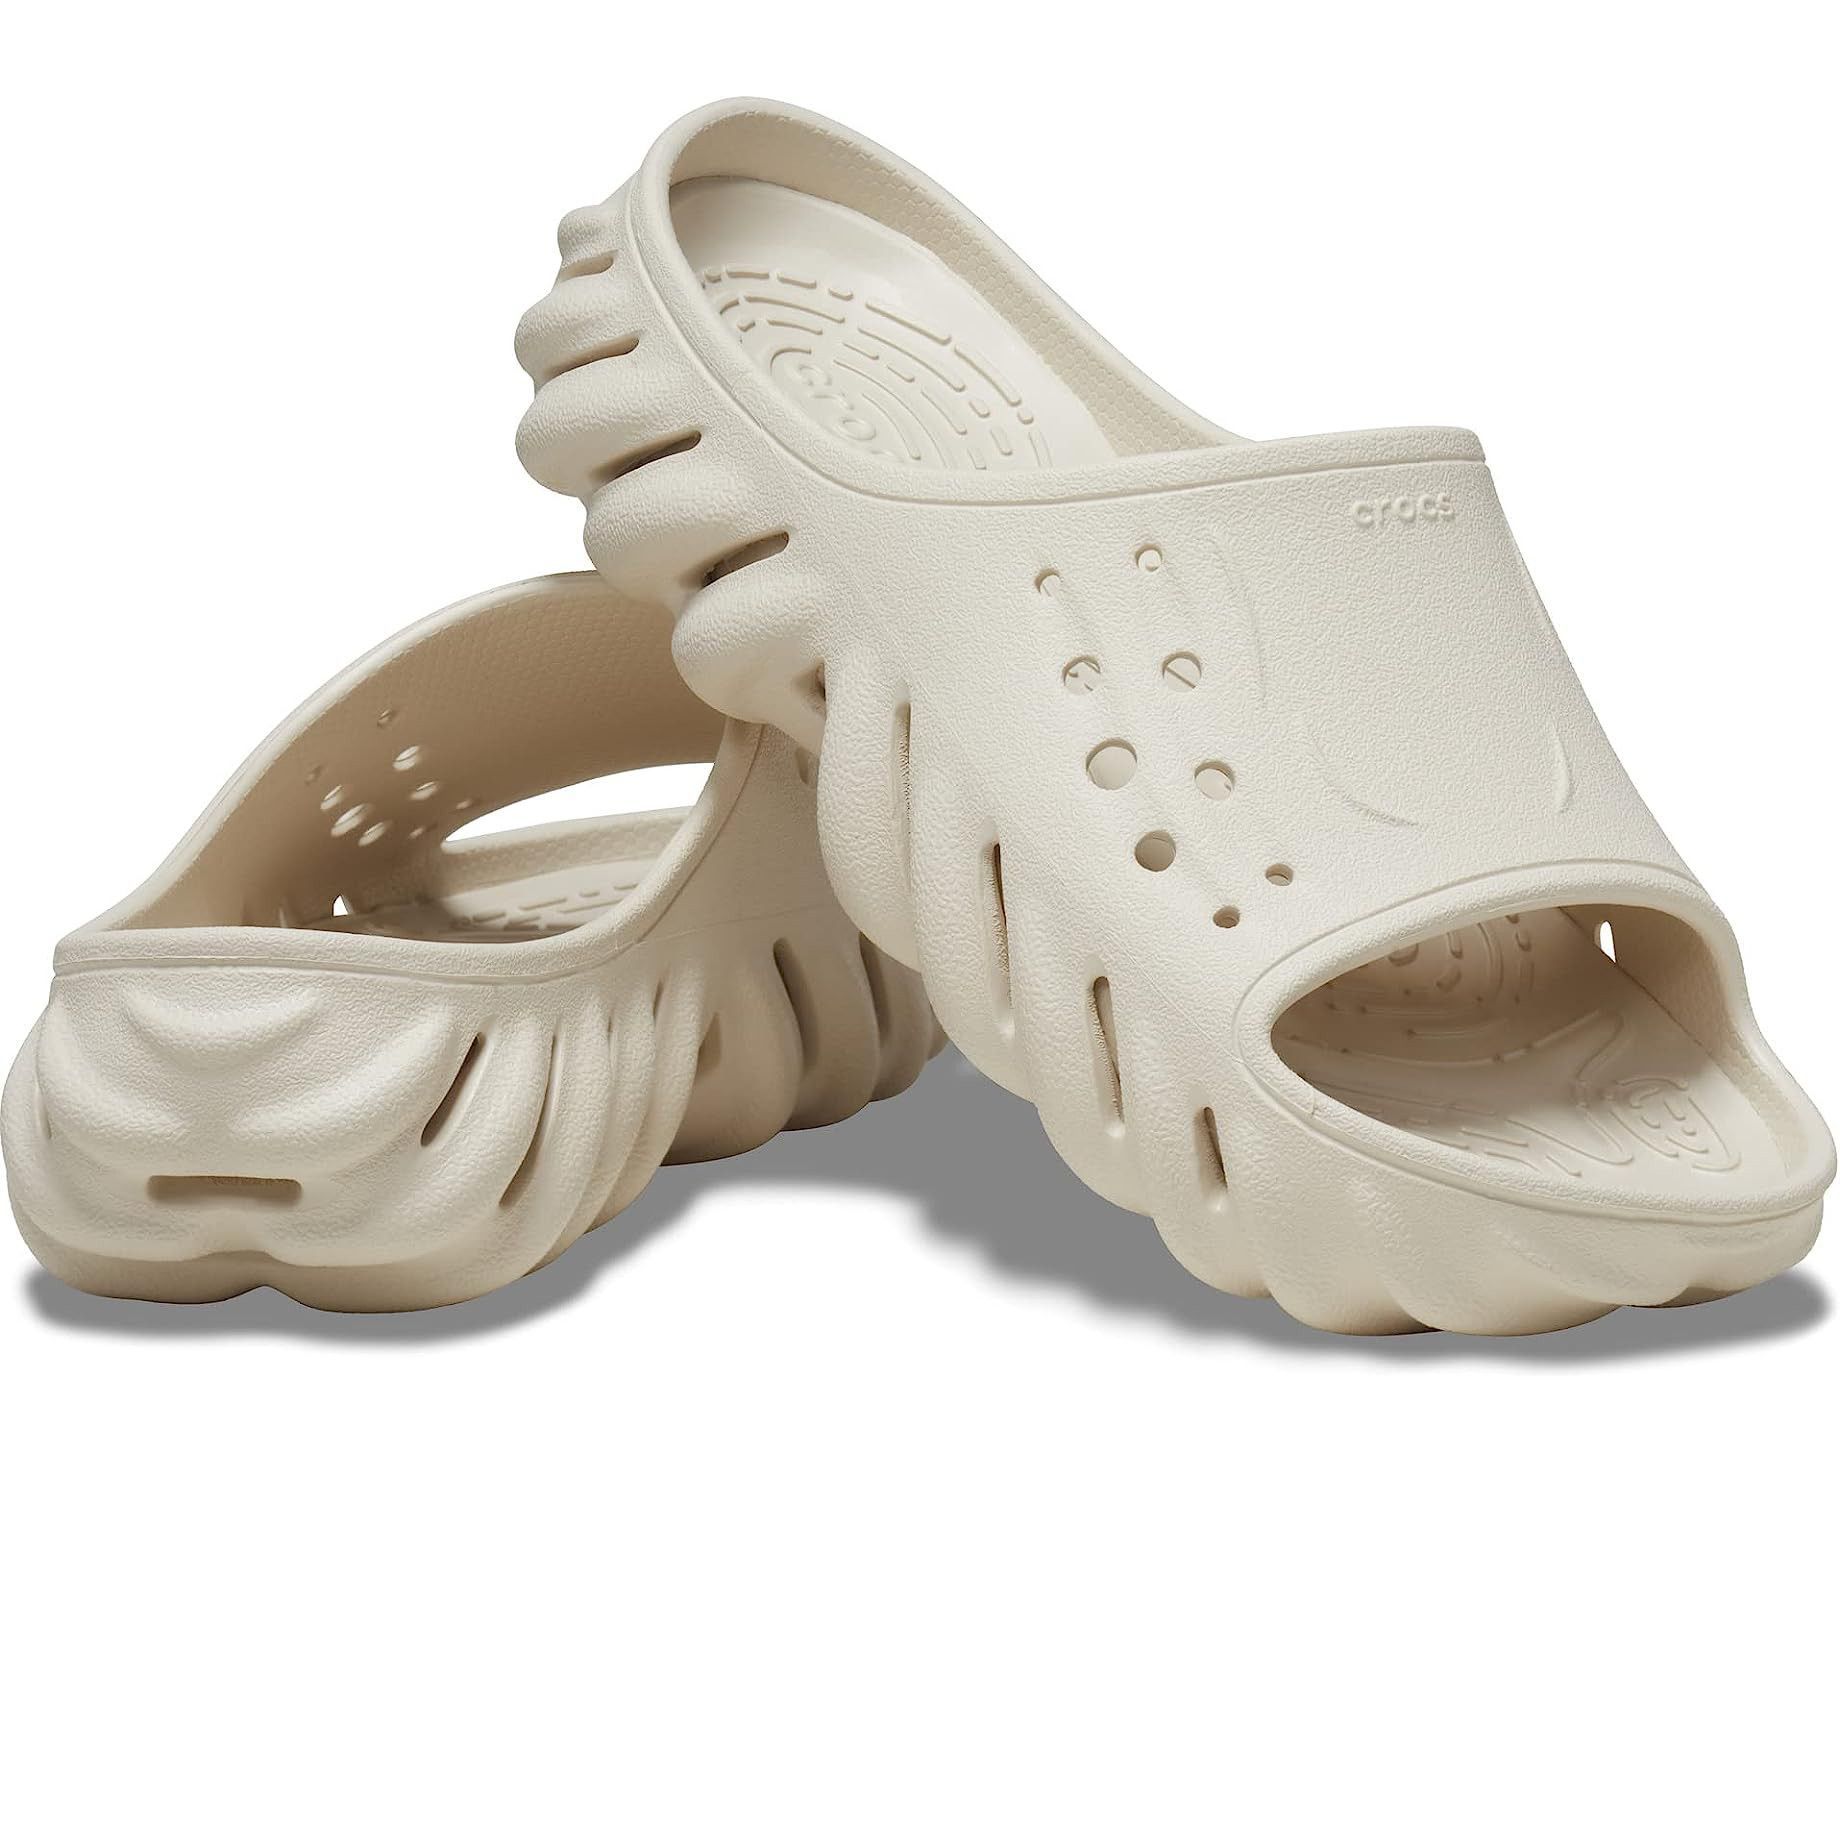 Crocs Men's Sandals, Casual & Comfortable Sandals For Men - Crocs™ India